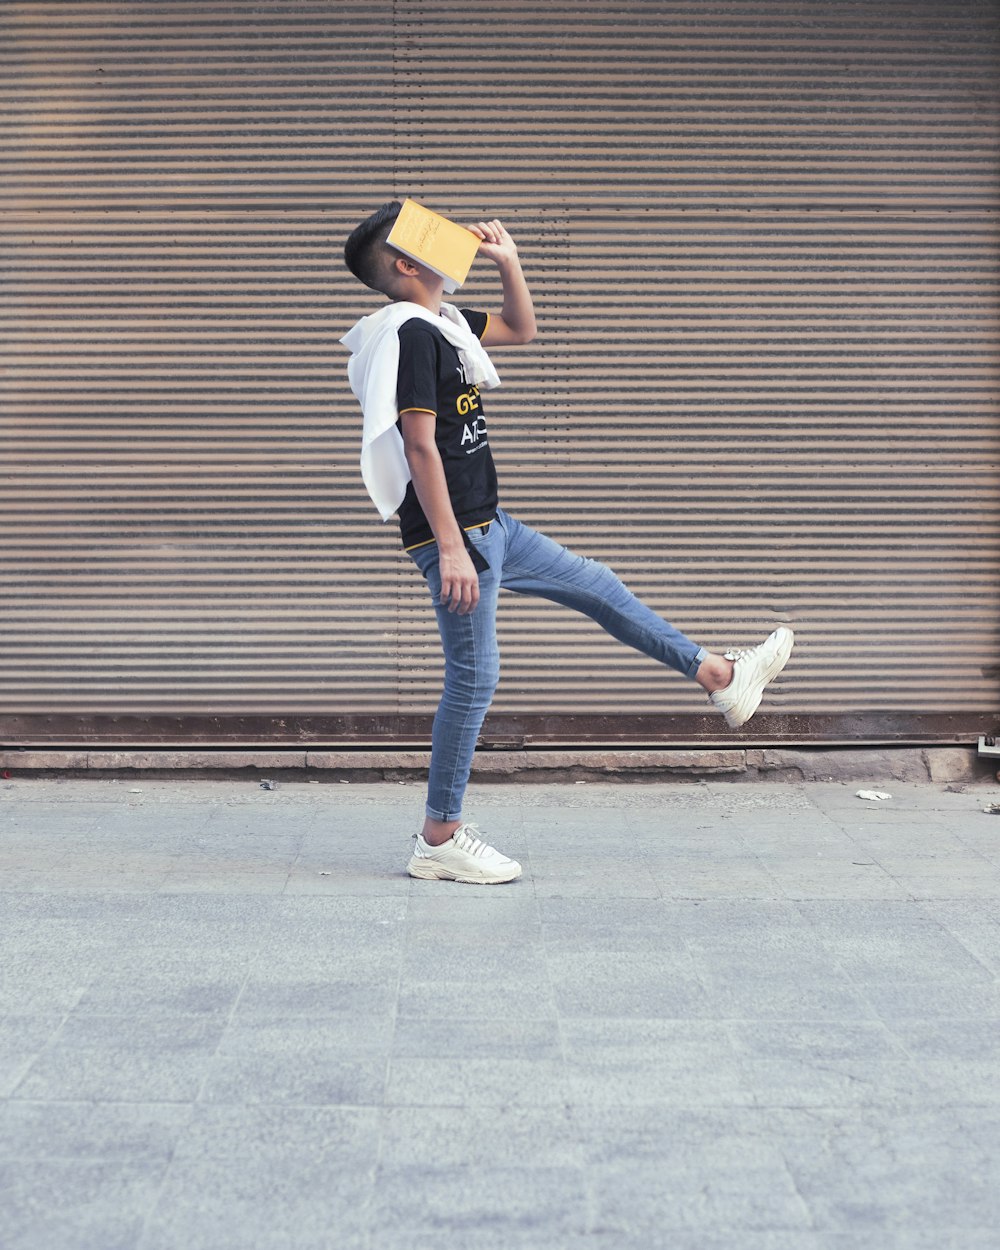 Femme en chemise blanche et jean bleu debout sur le trottoir pendant la journée